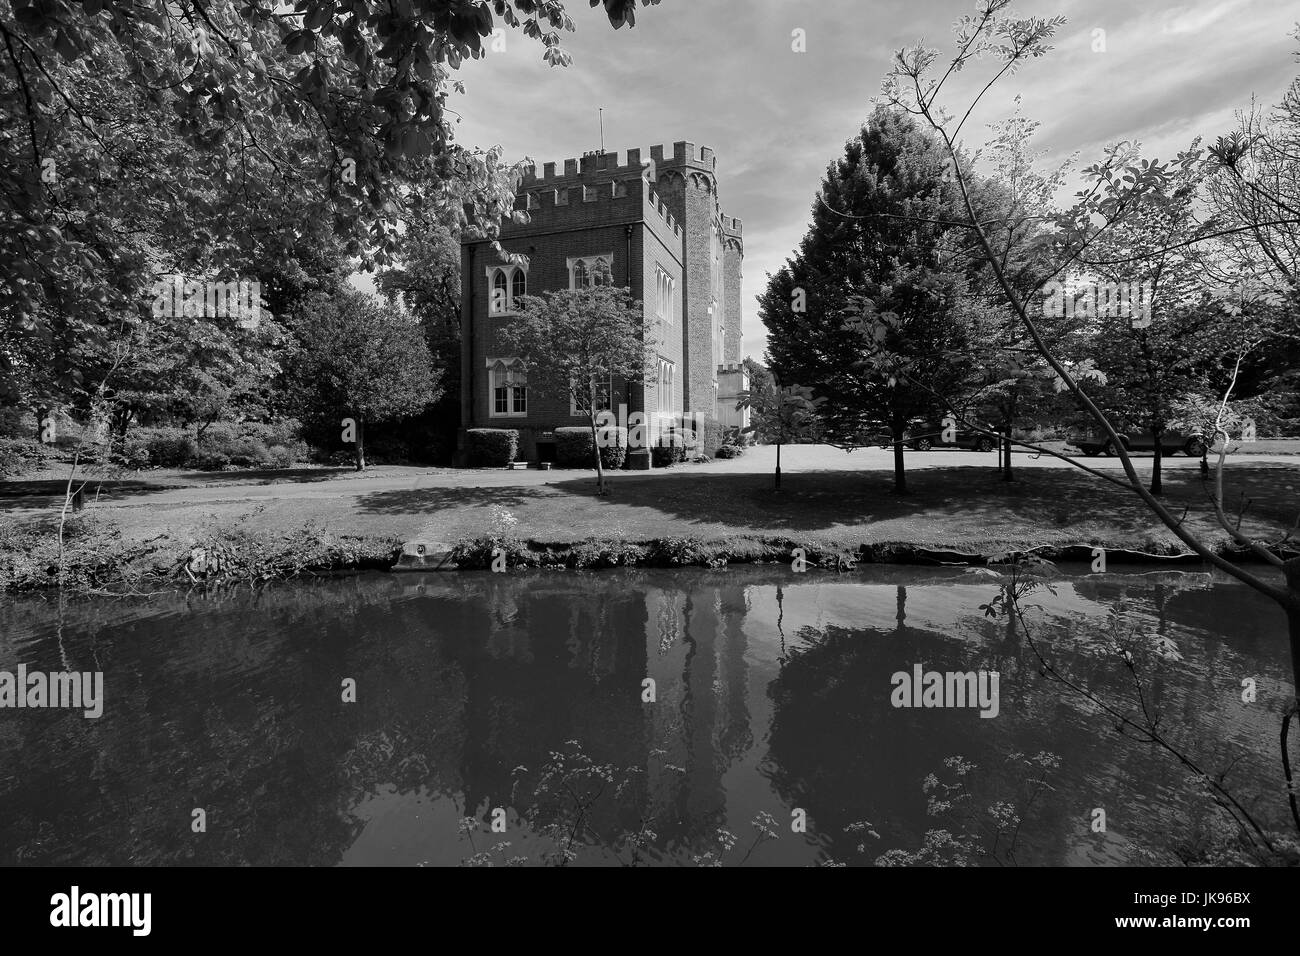 Sommer, Schlossgarten und Hertford Castle, Hertford Stadt, Grafschaft Hertfordshire, England, UK Stockfoto